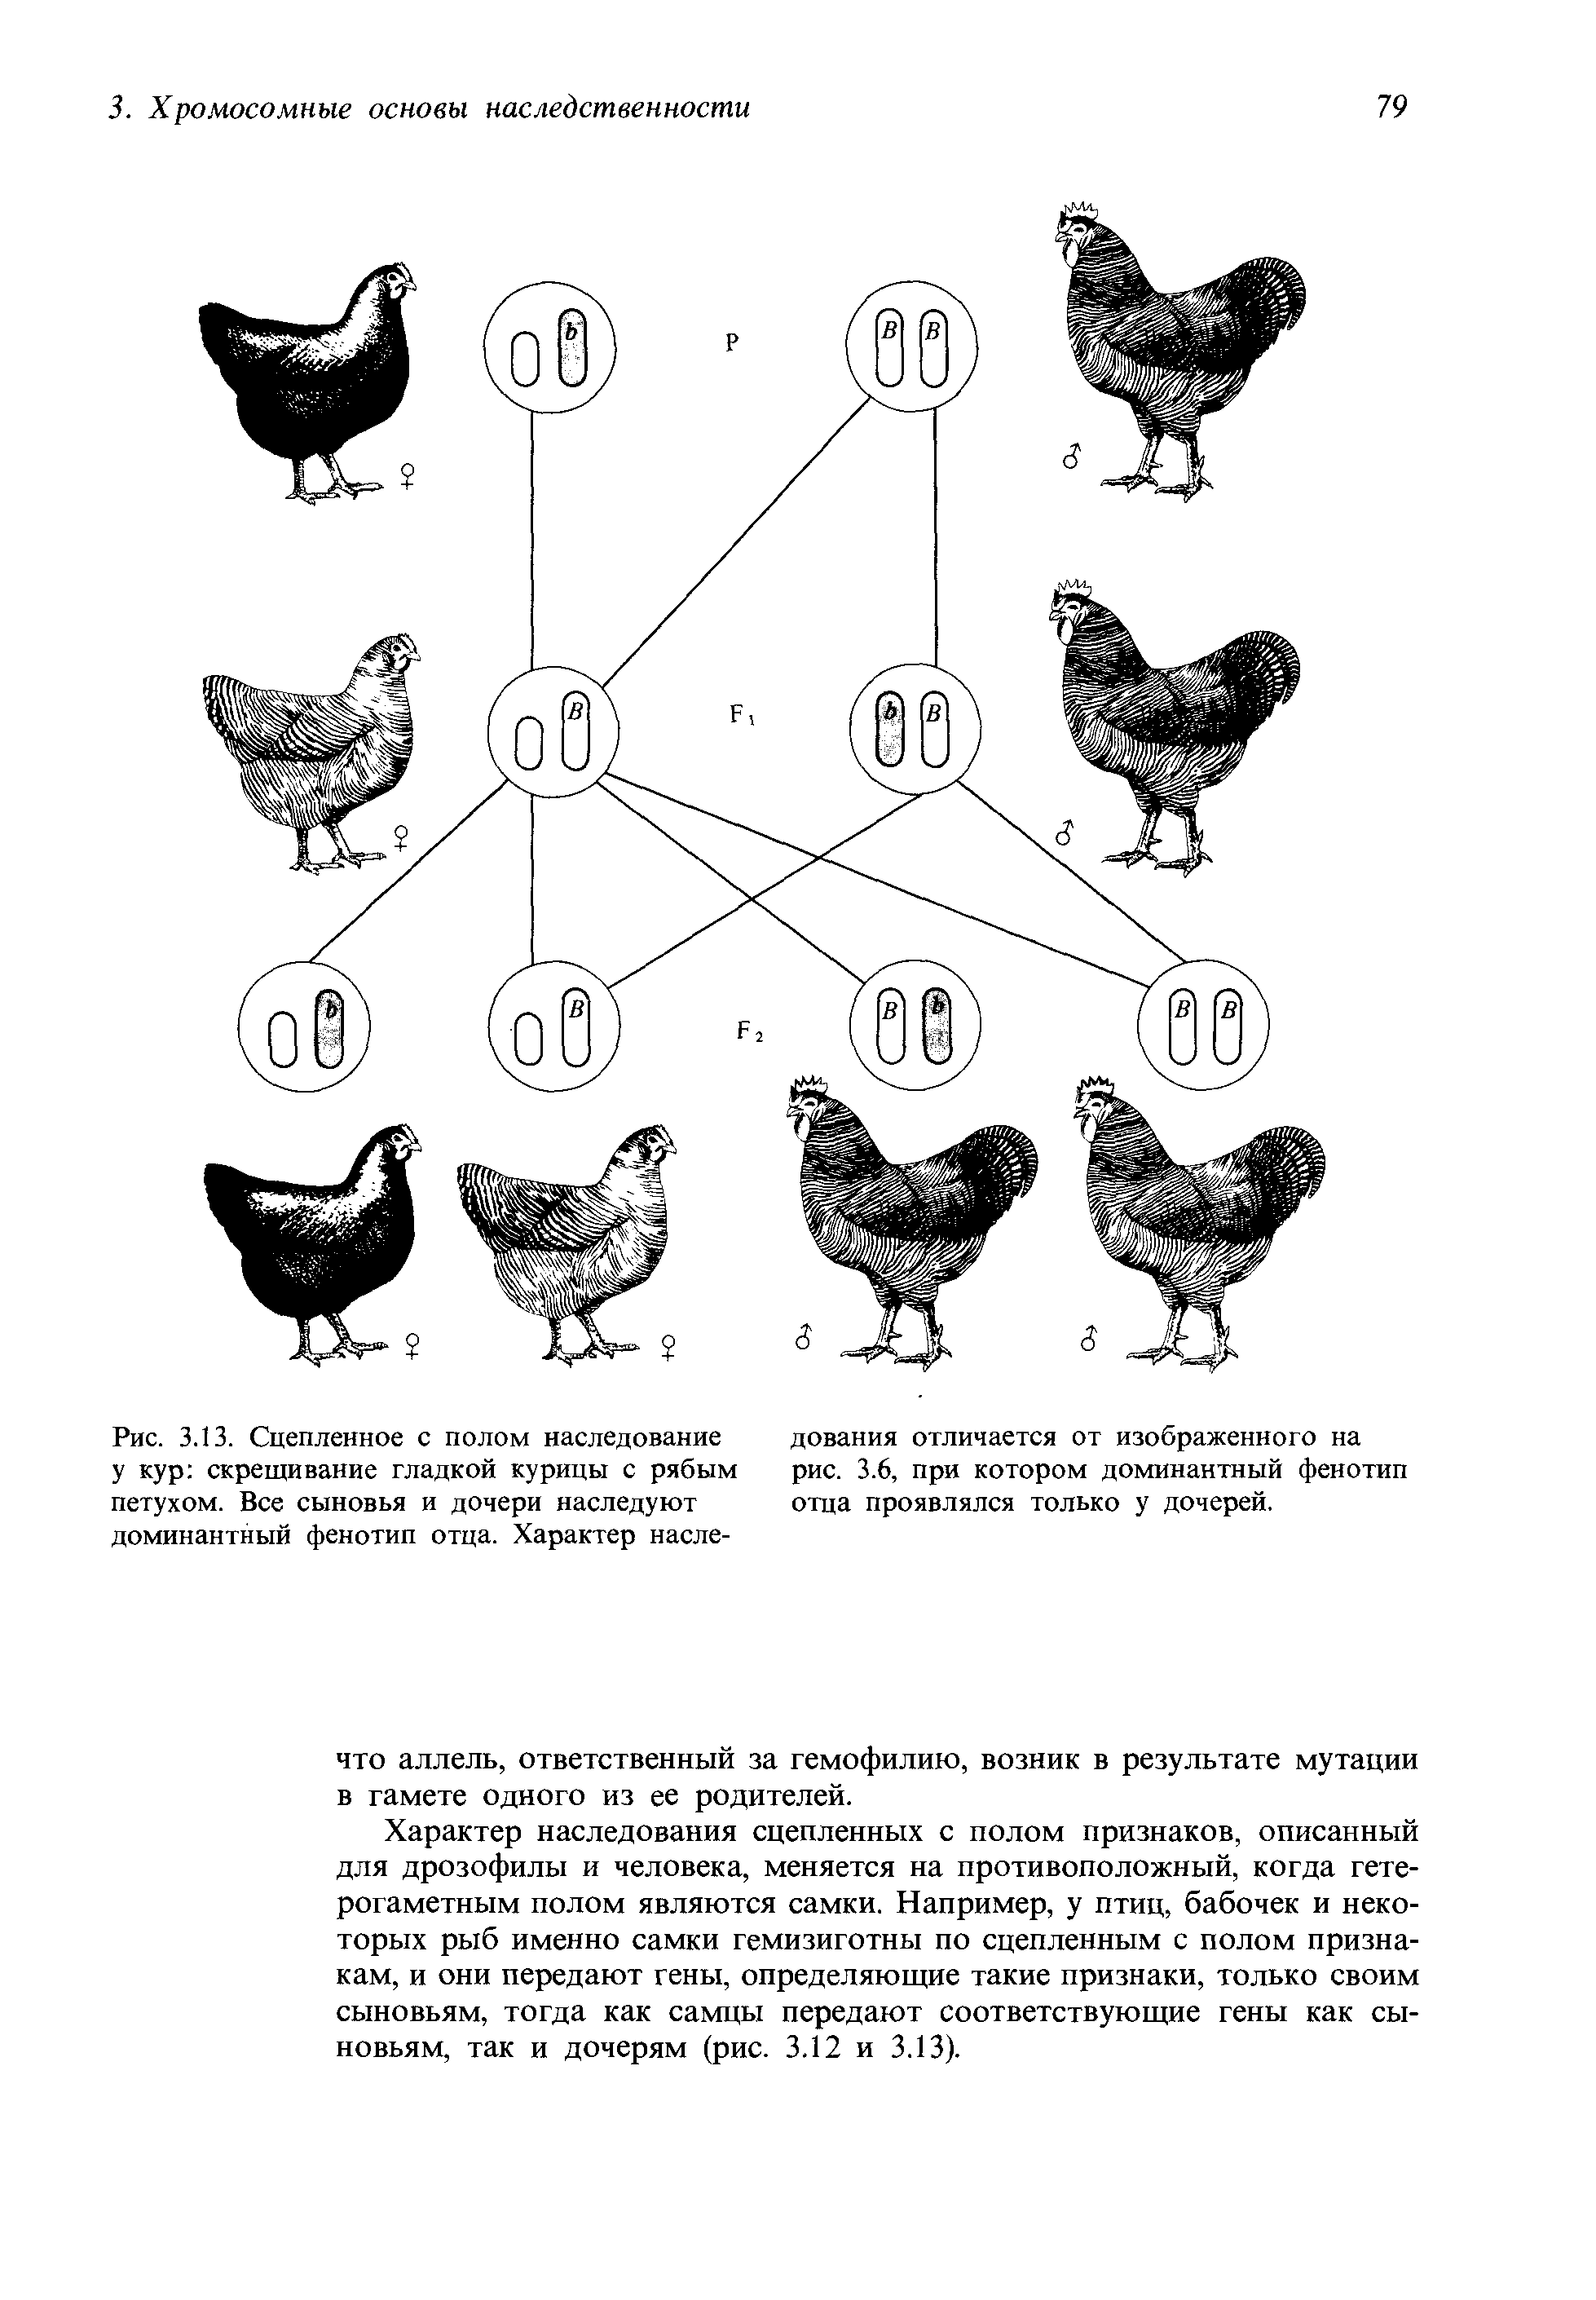 Гетерозиготную курицу с гребнем и голыми. Таблица доминантных признаков у кур. Наследование окраски оперения у кур. Схема скрещивания кур. Наследование признаков у кур.